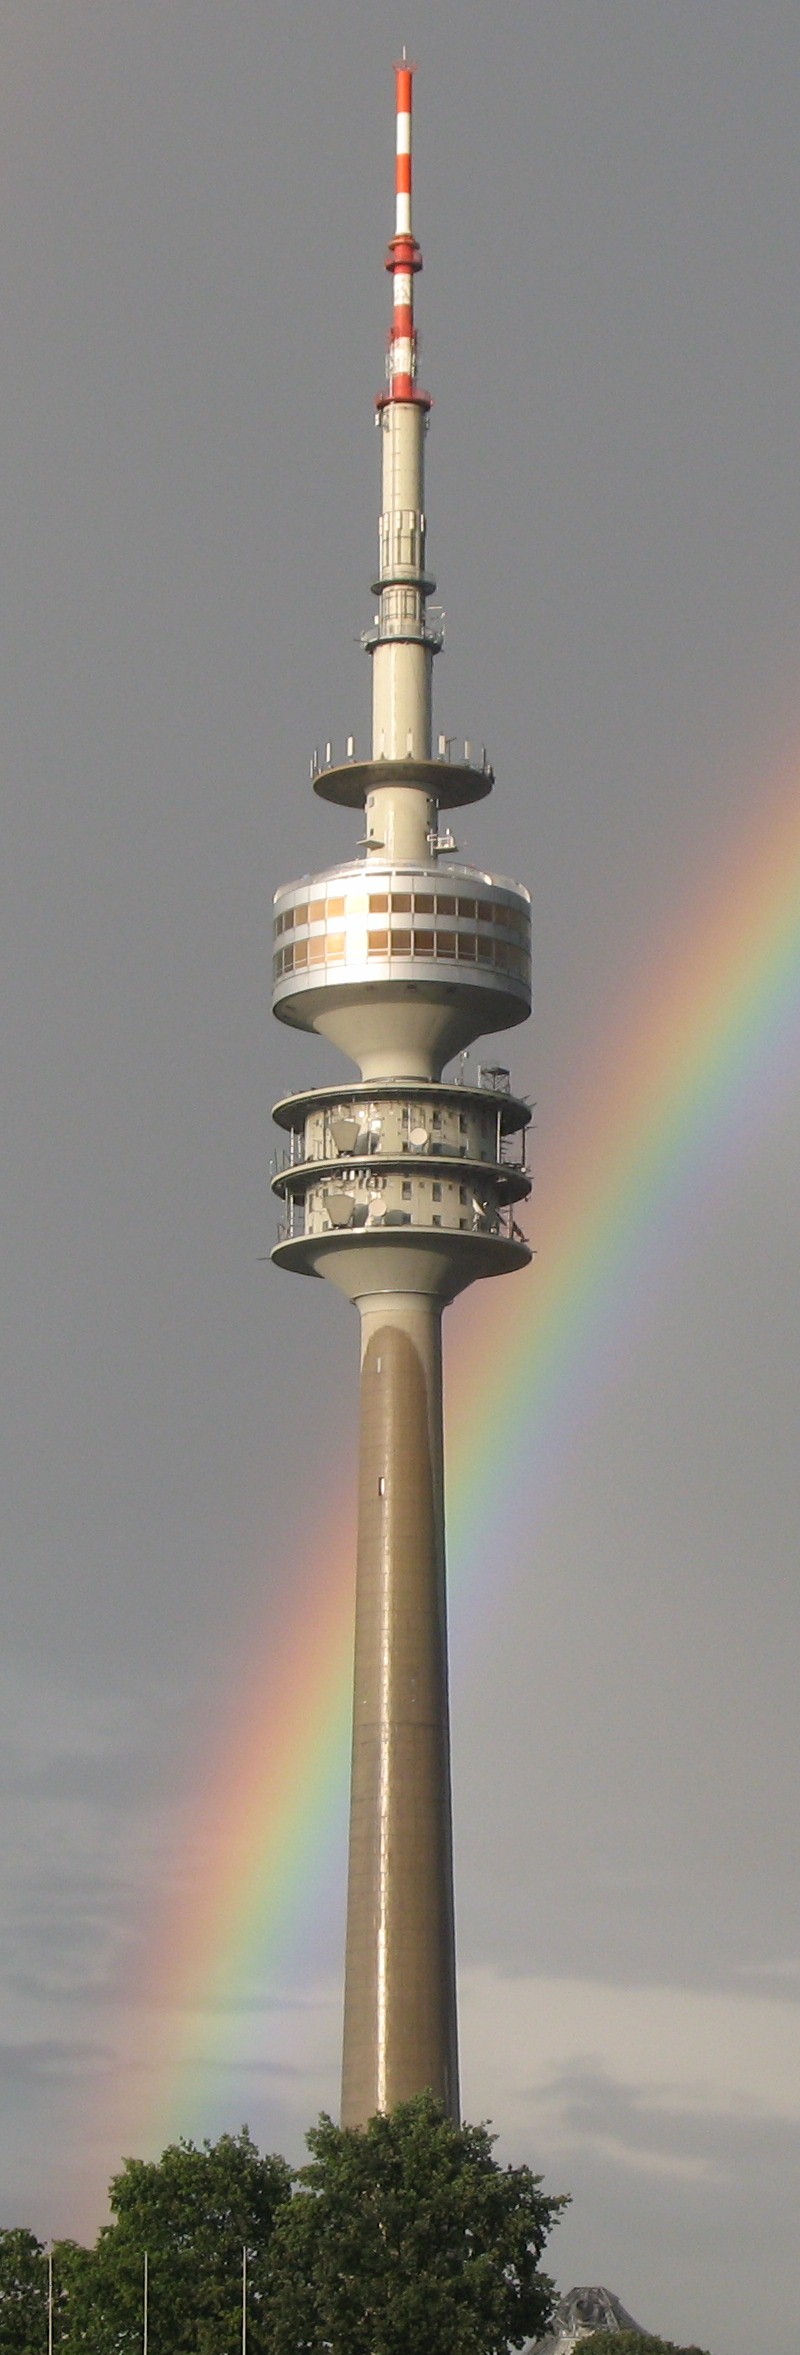 Fernsehturm in München